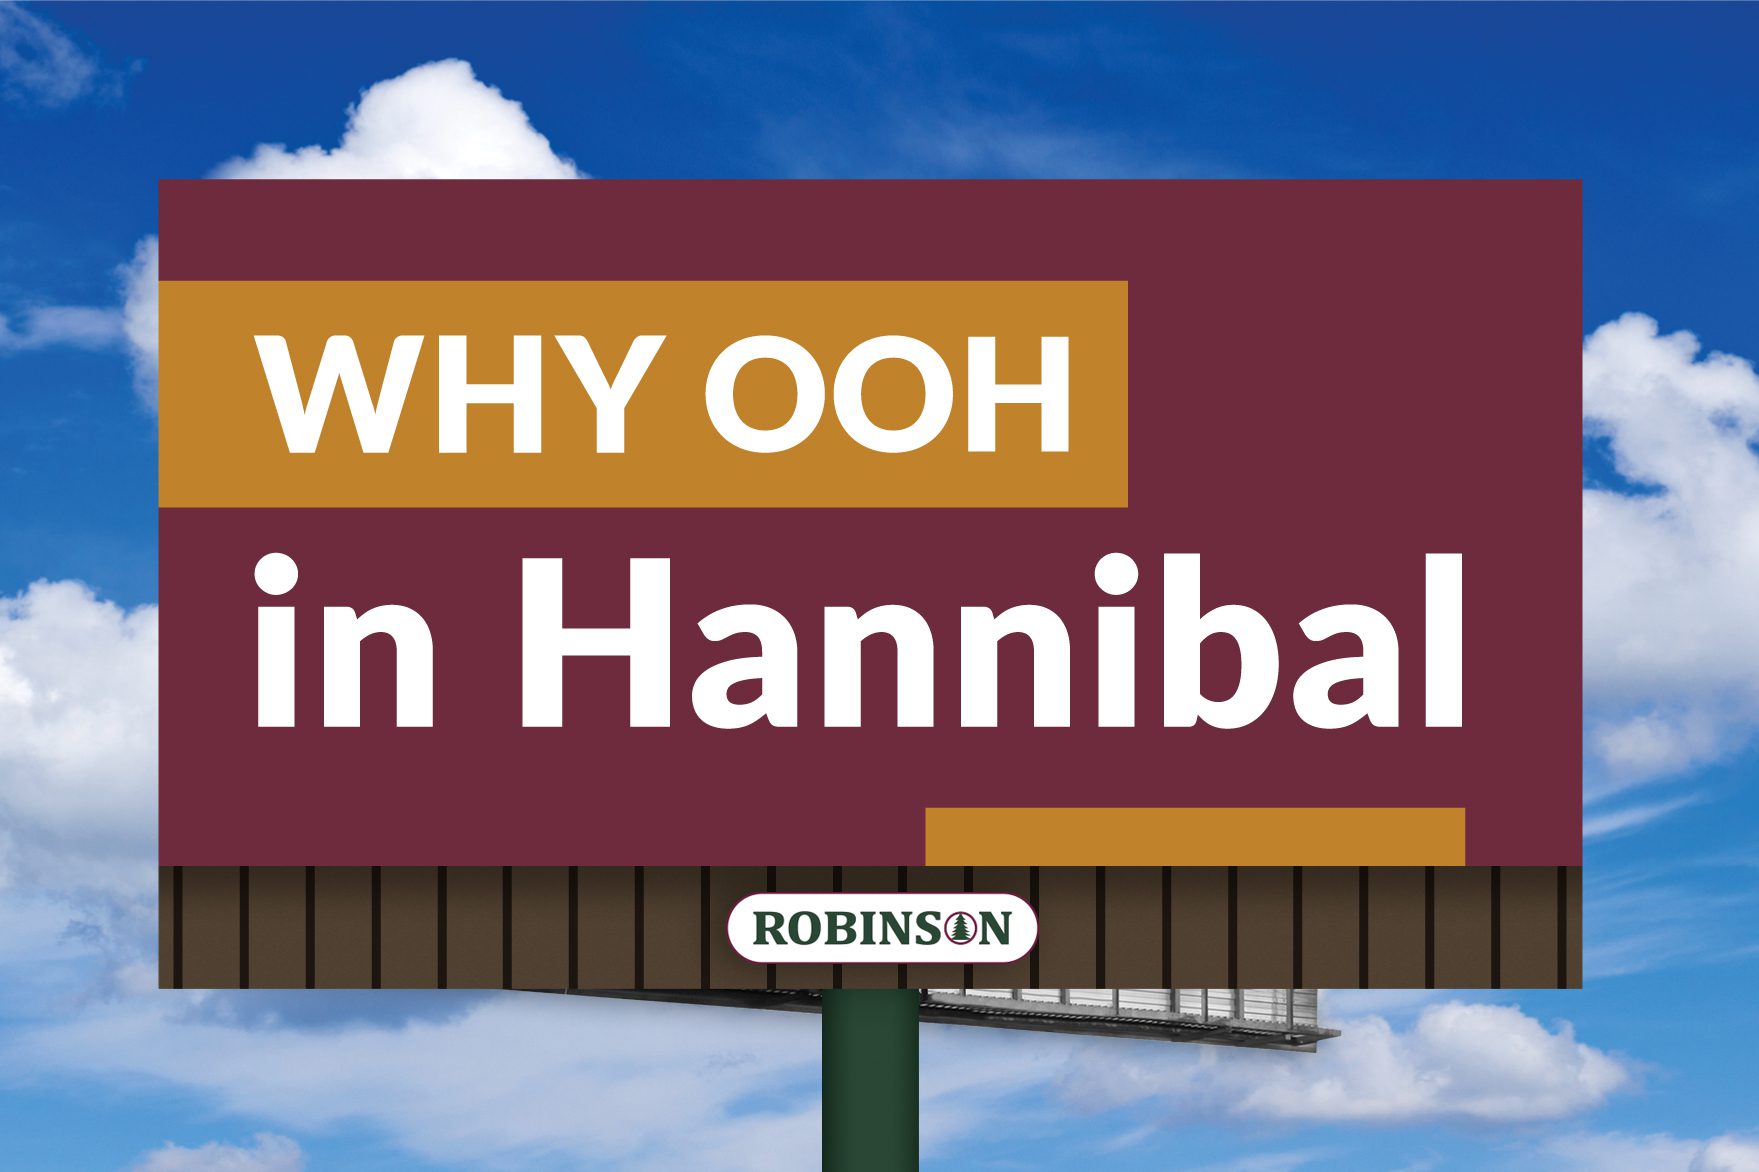 Hannibal Missouri digital billboard advertising